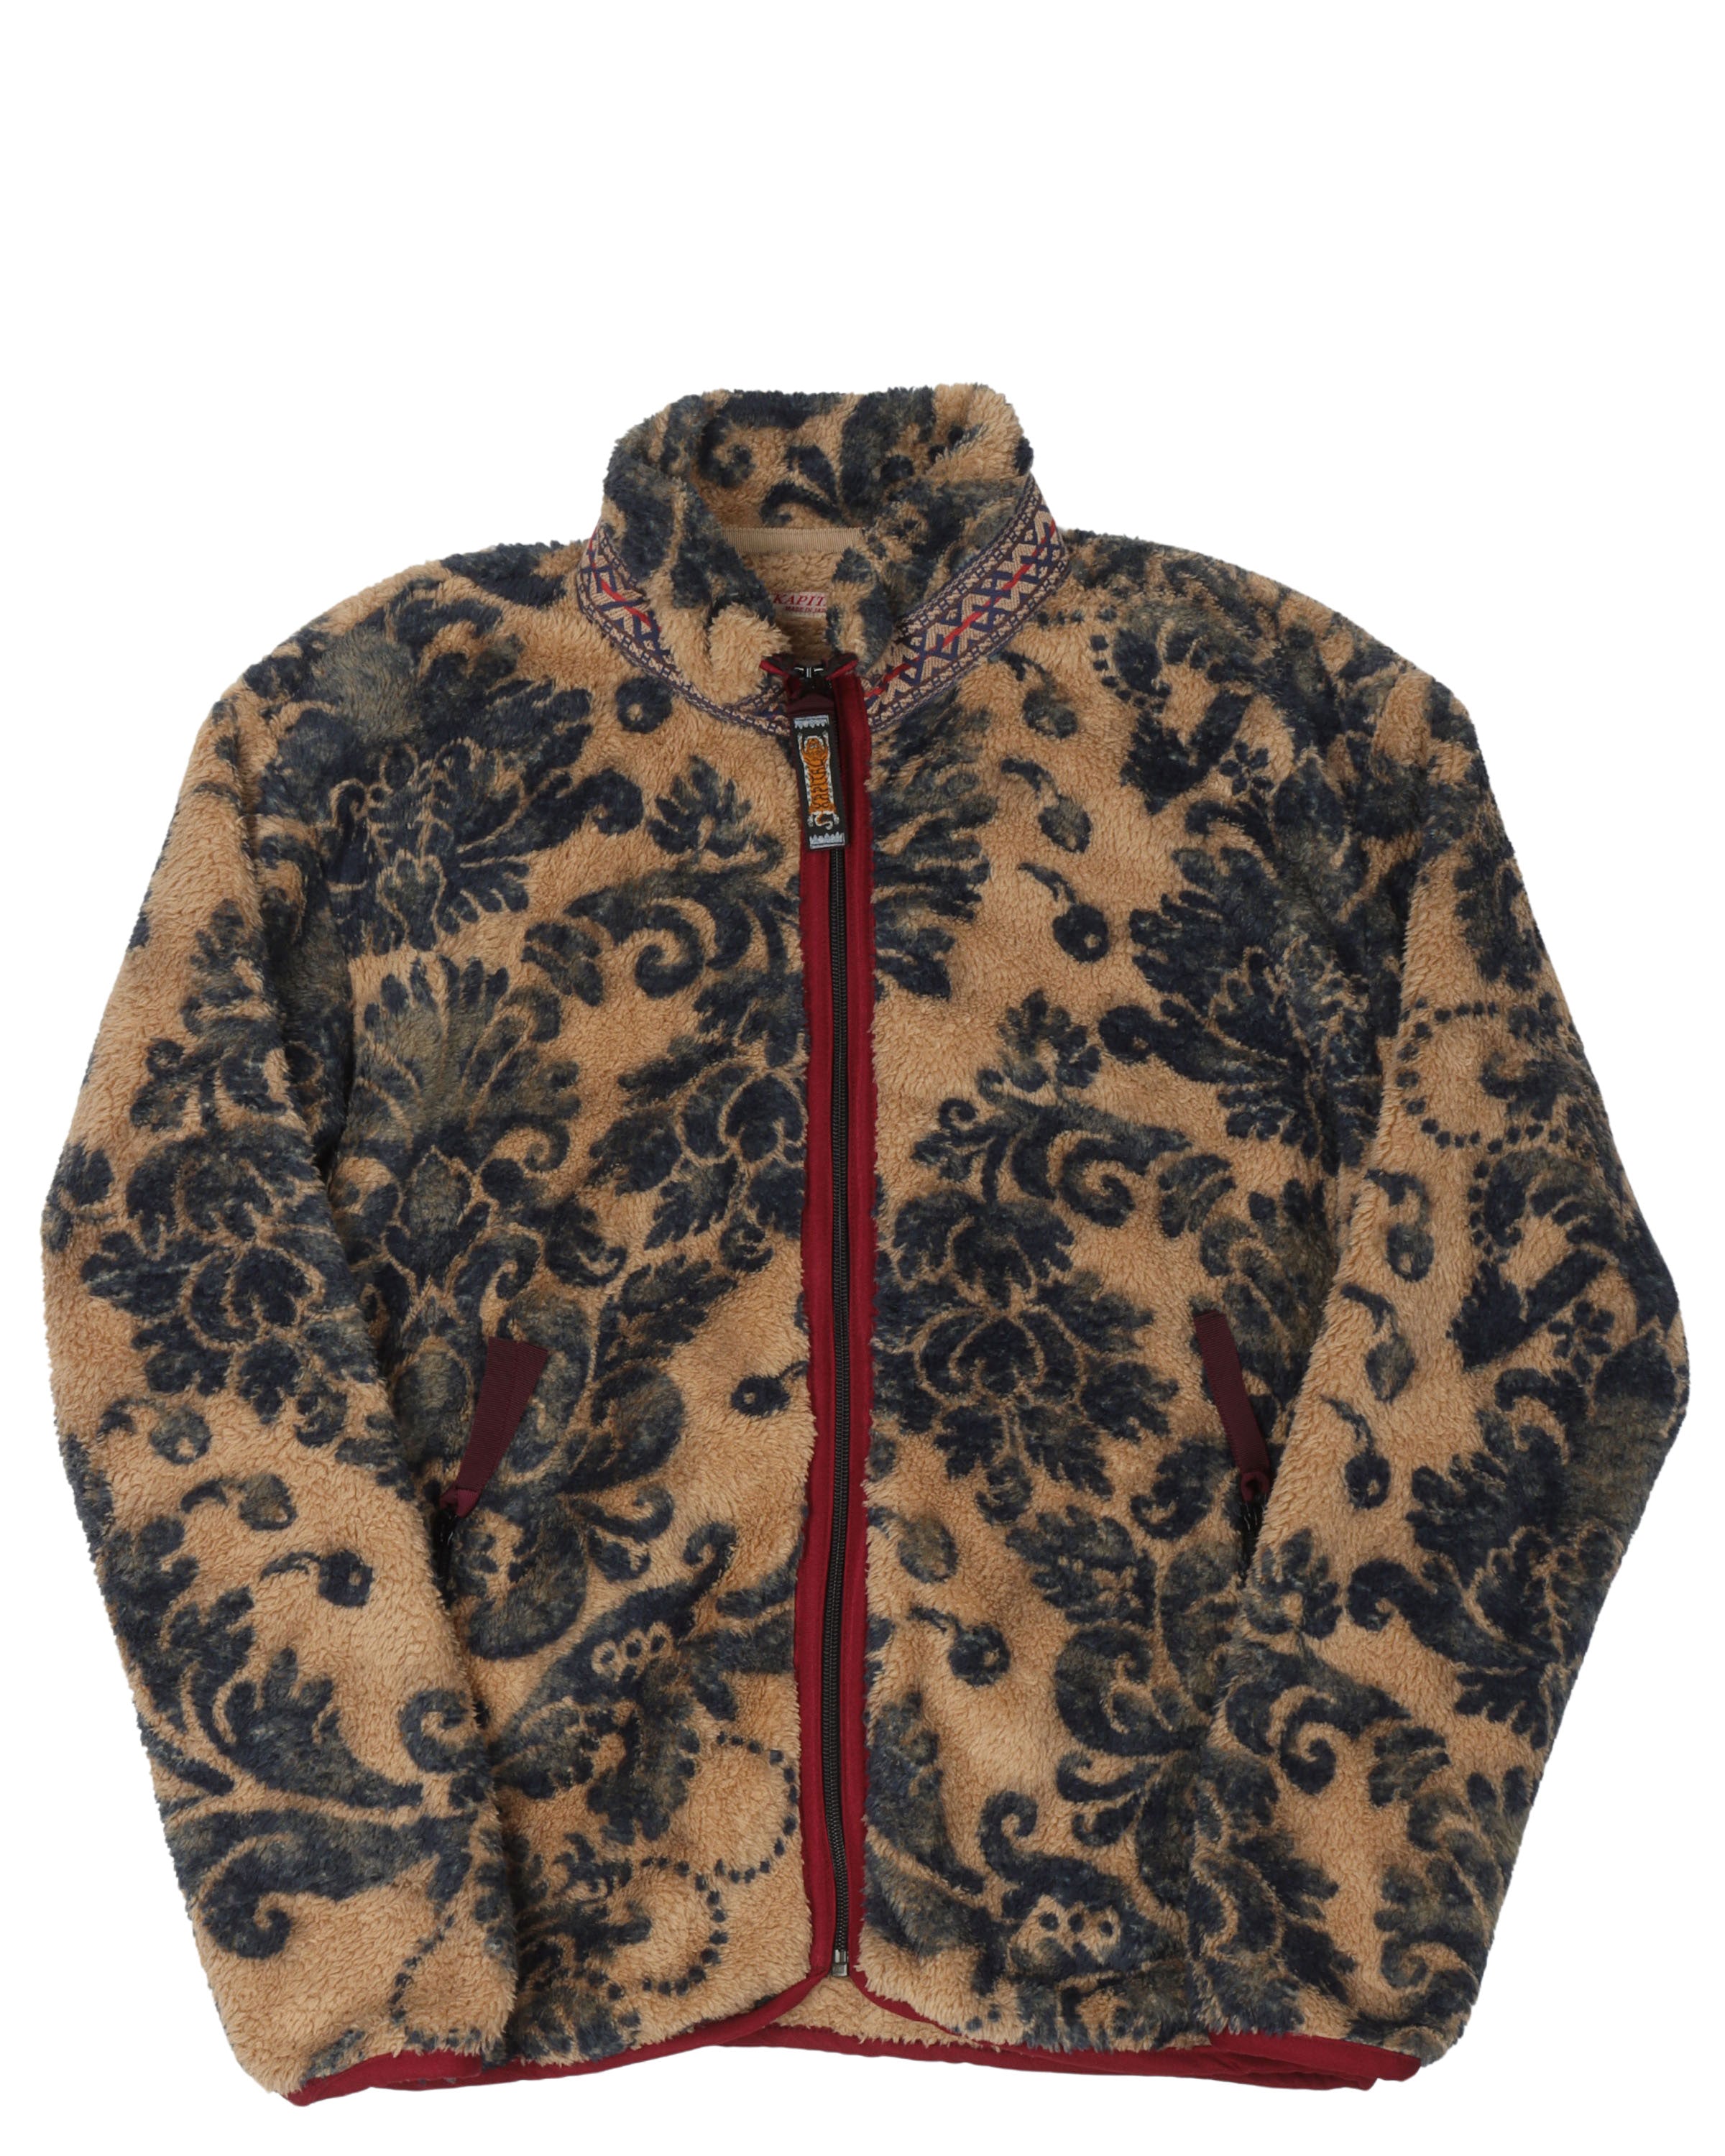 Damask Fleece Zip Jacket